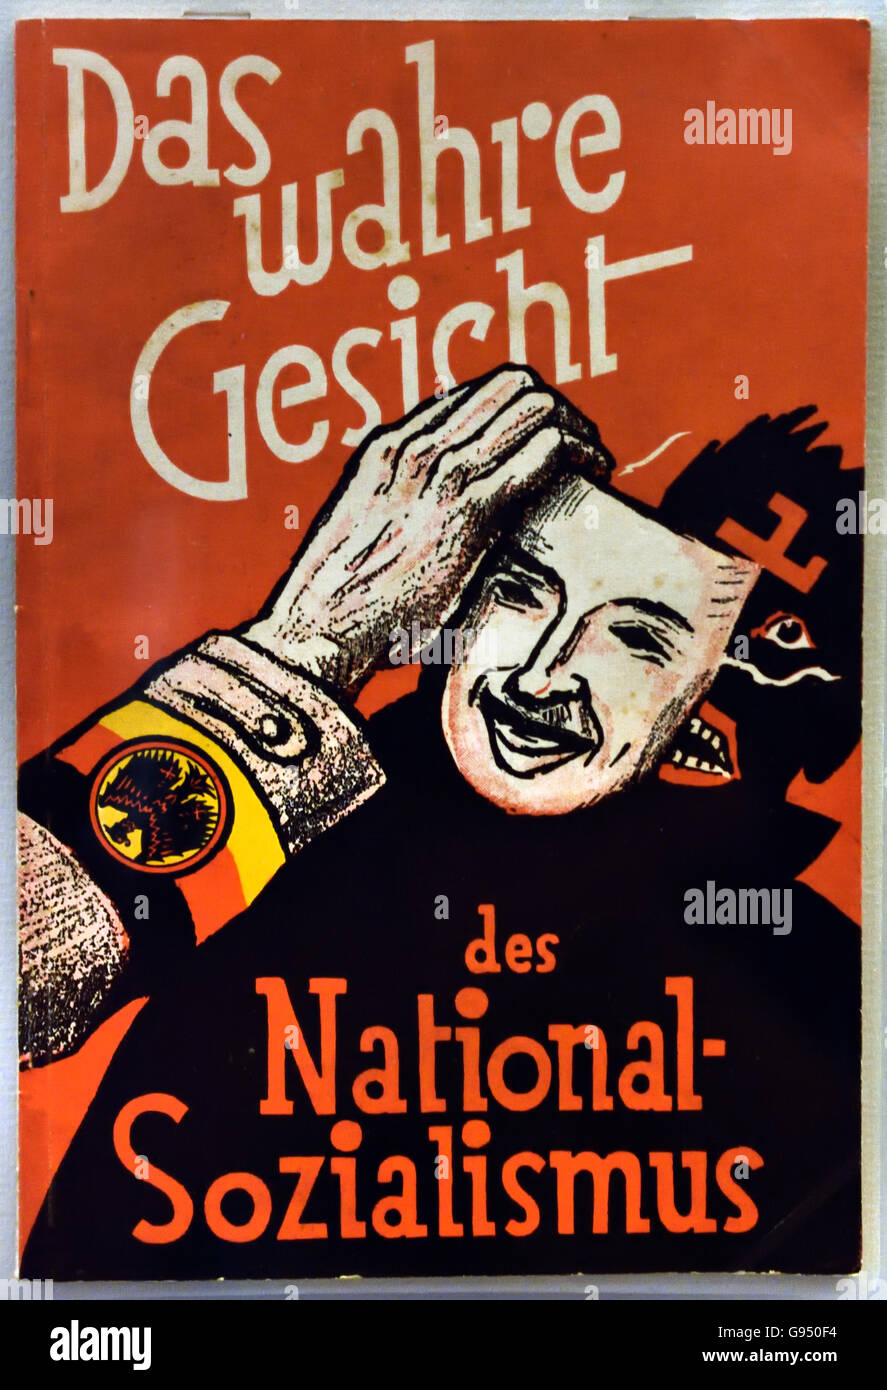 Das wahre Gesicht des Sozialismus nación - el verdadero rostro del Nacional Socialismo Otto Horsing 1874-1937 Berlin Alemania Nazi Foto de stock